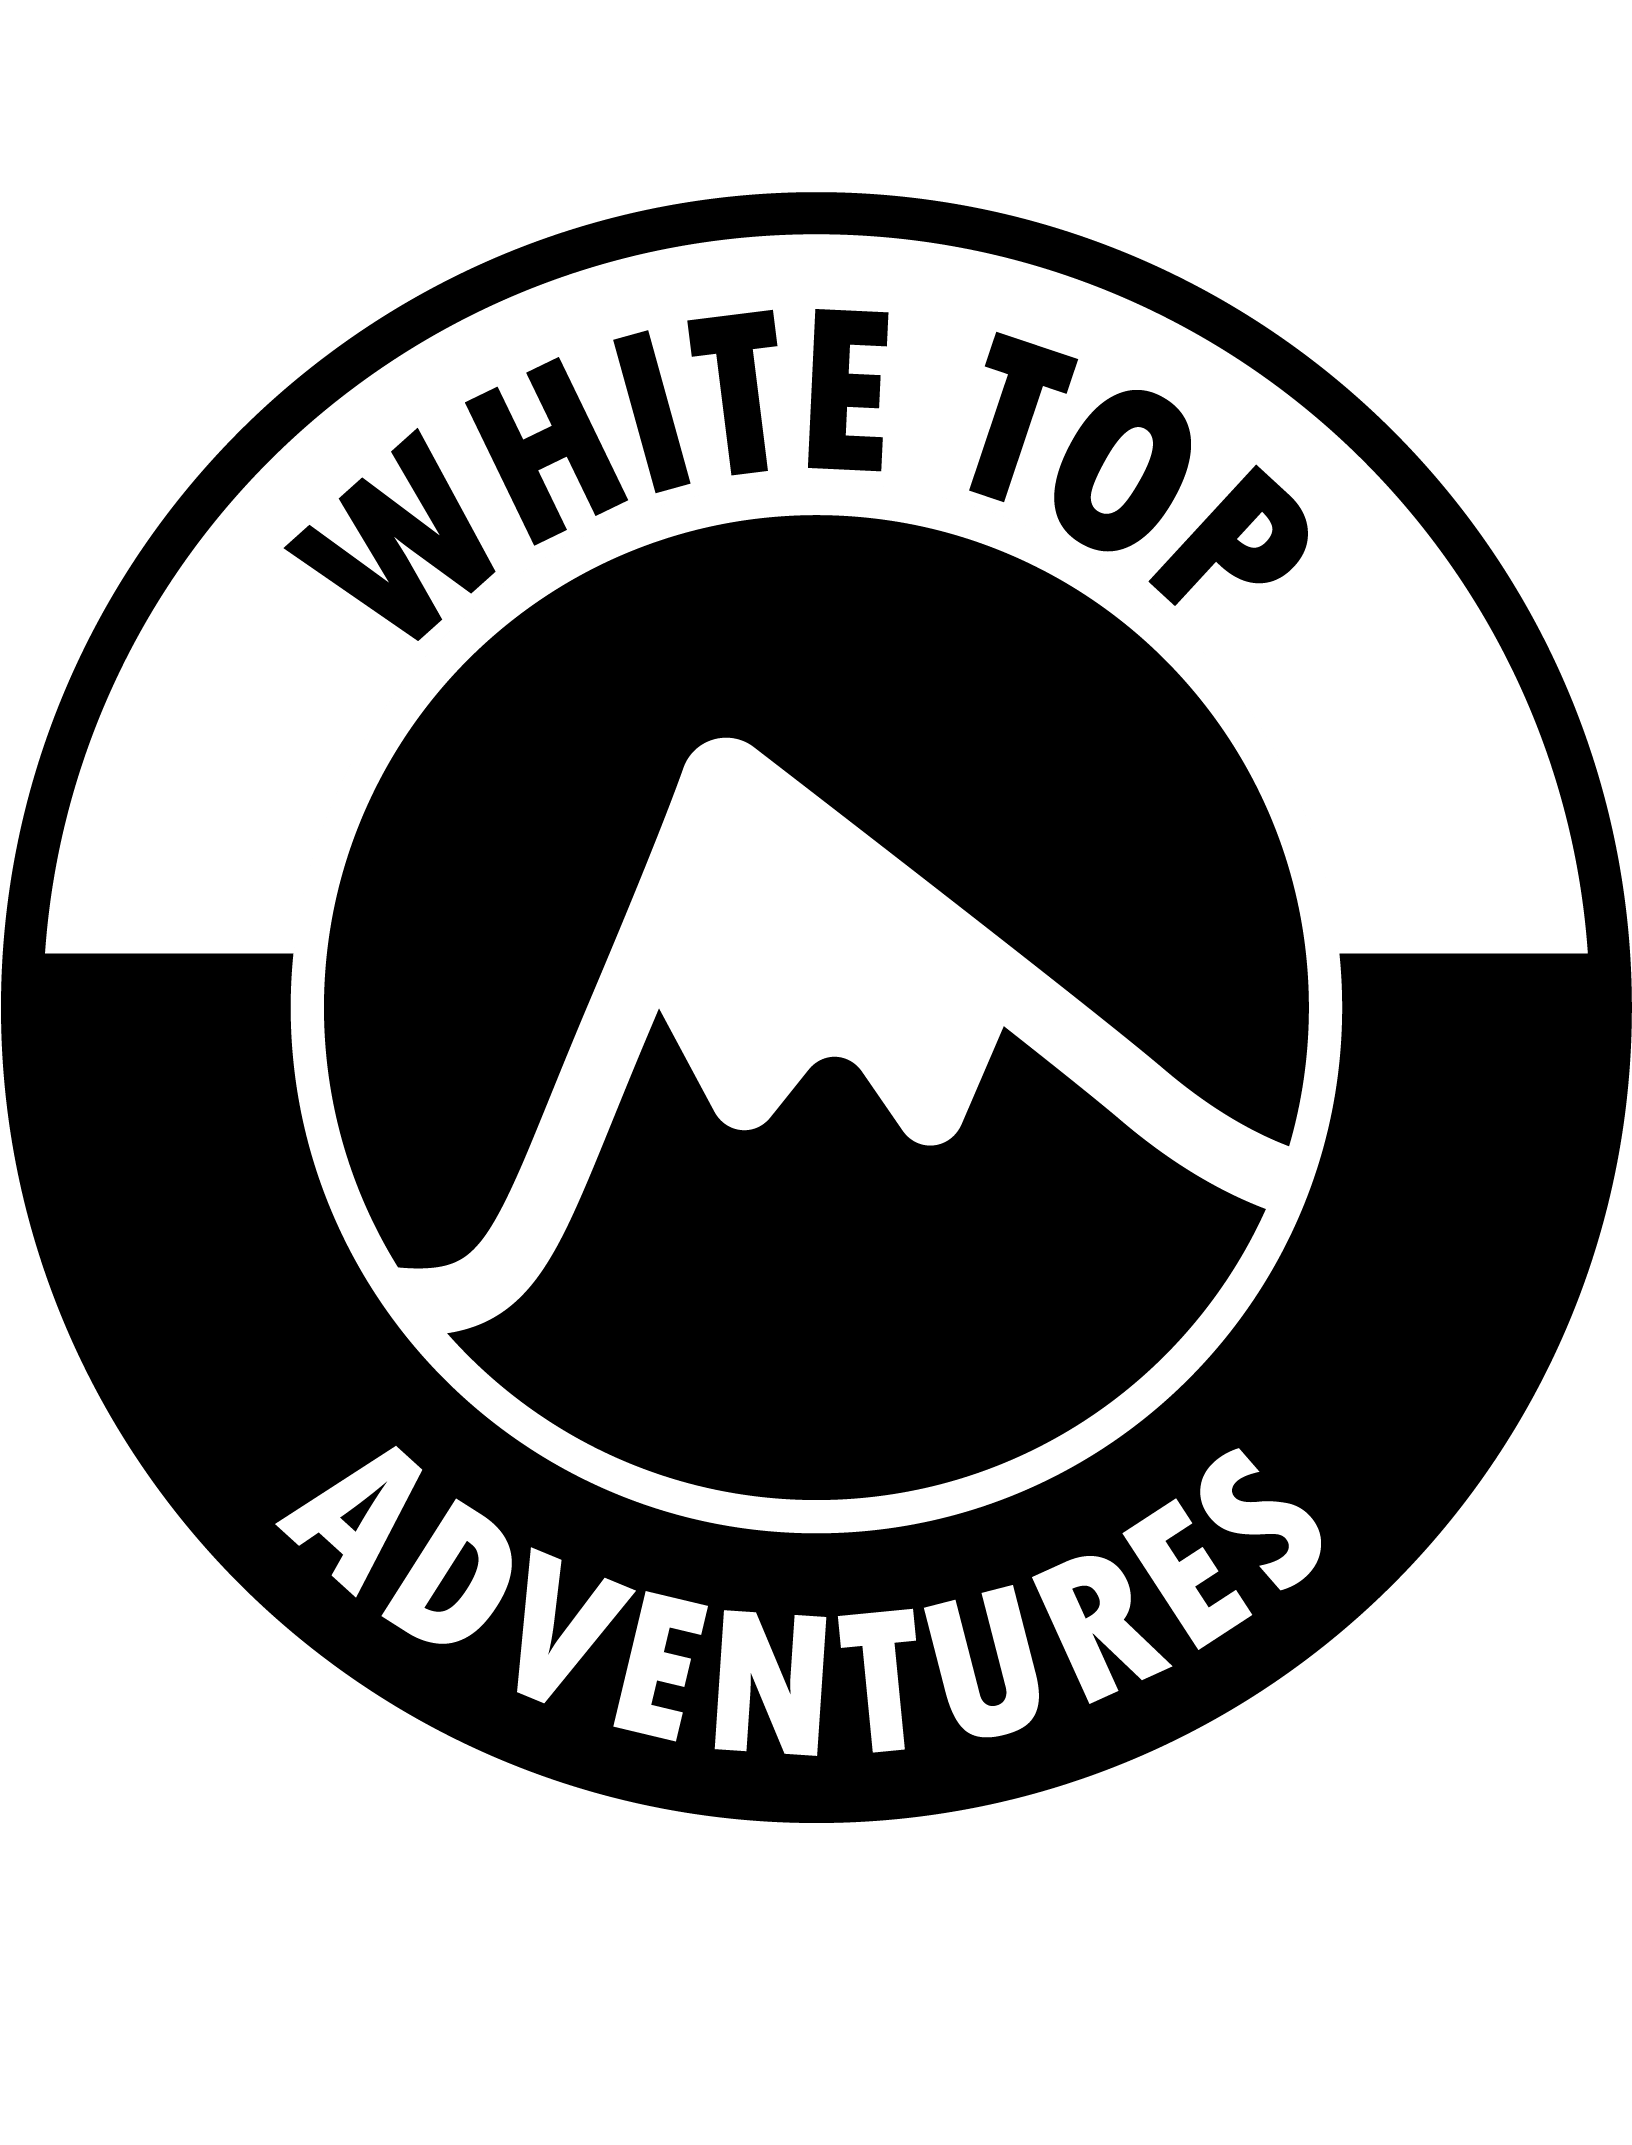 White Top Adventures